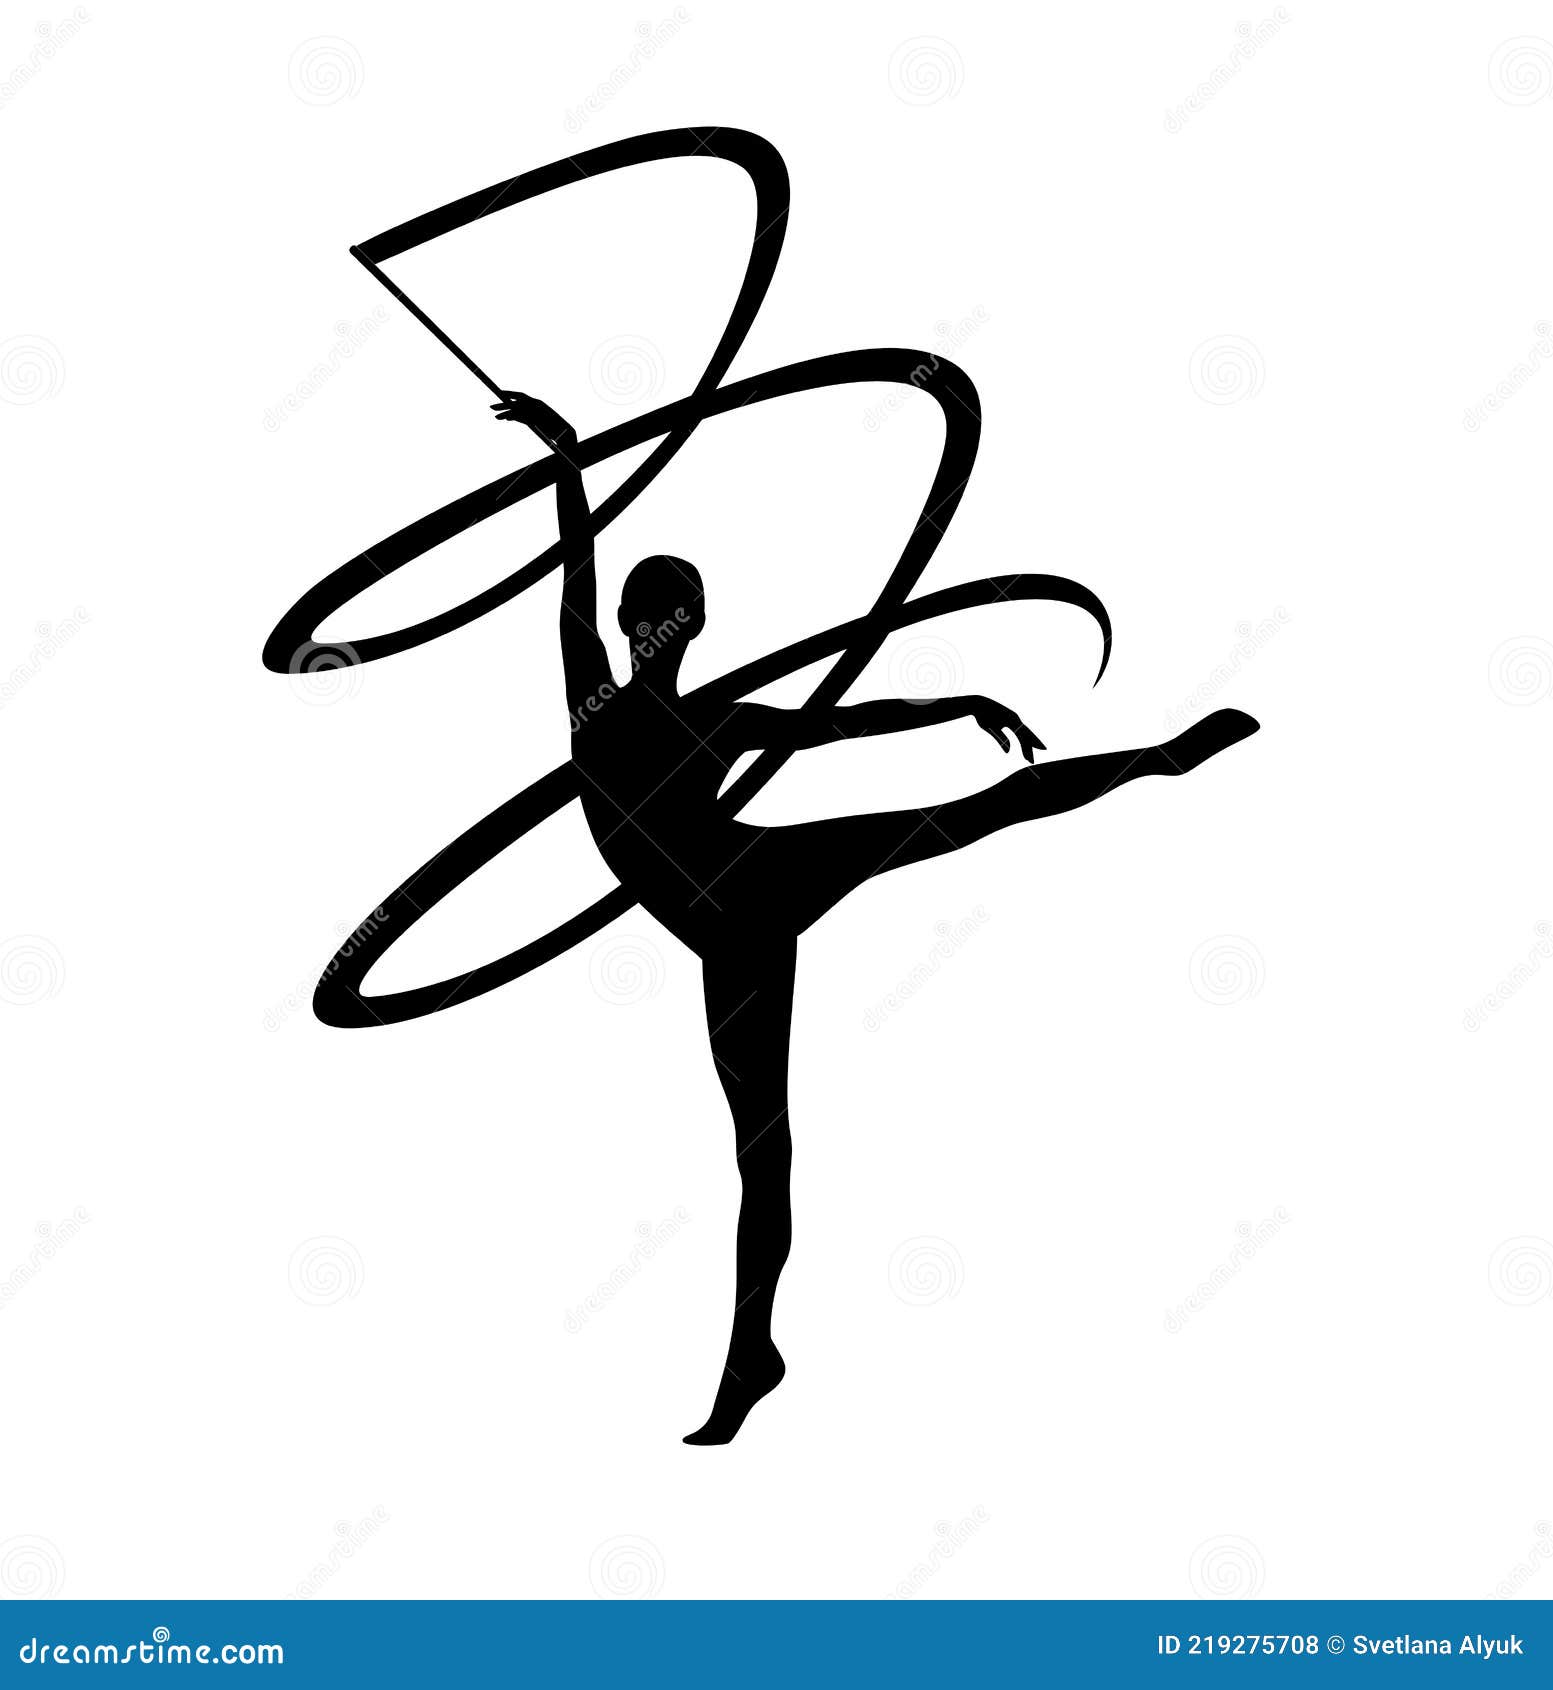 Ejercicio con cinta gimnasia rítmica chica silueta negra Imagen Vector de  stock - Alamy